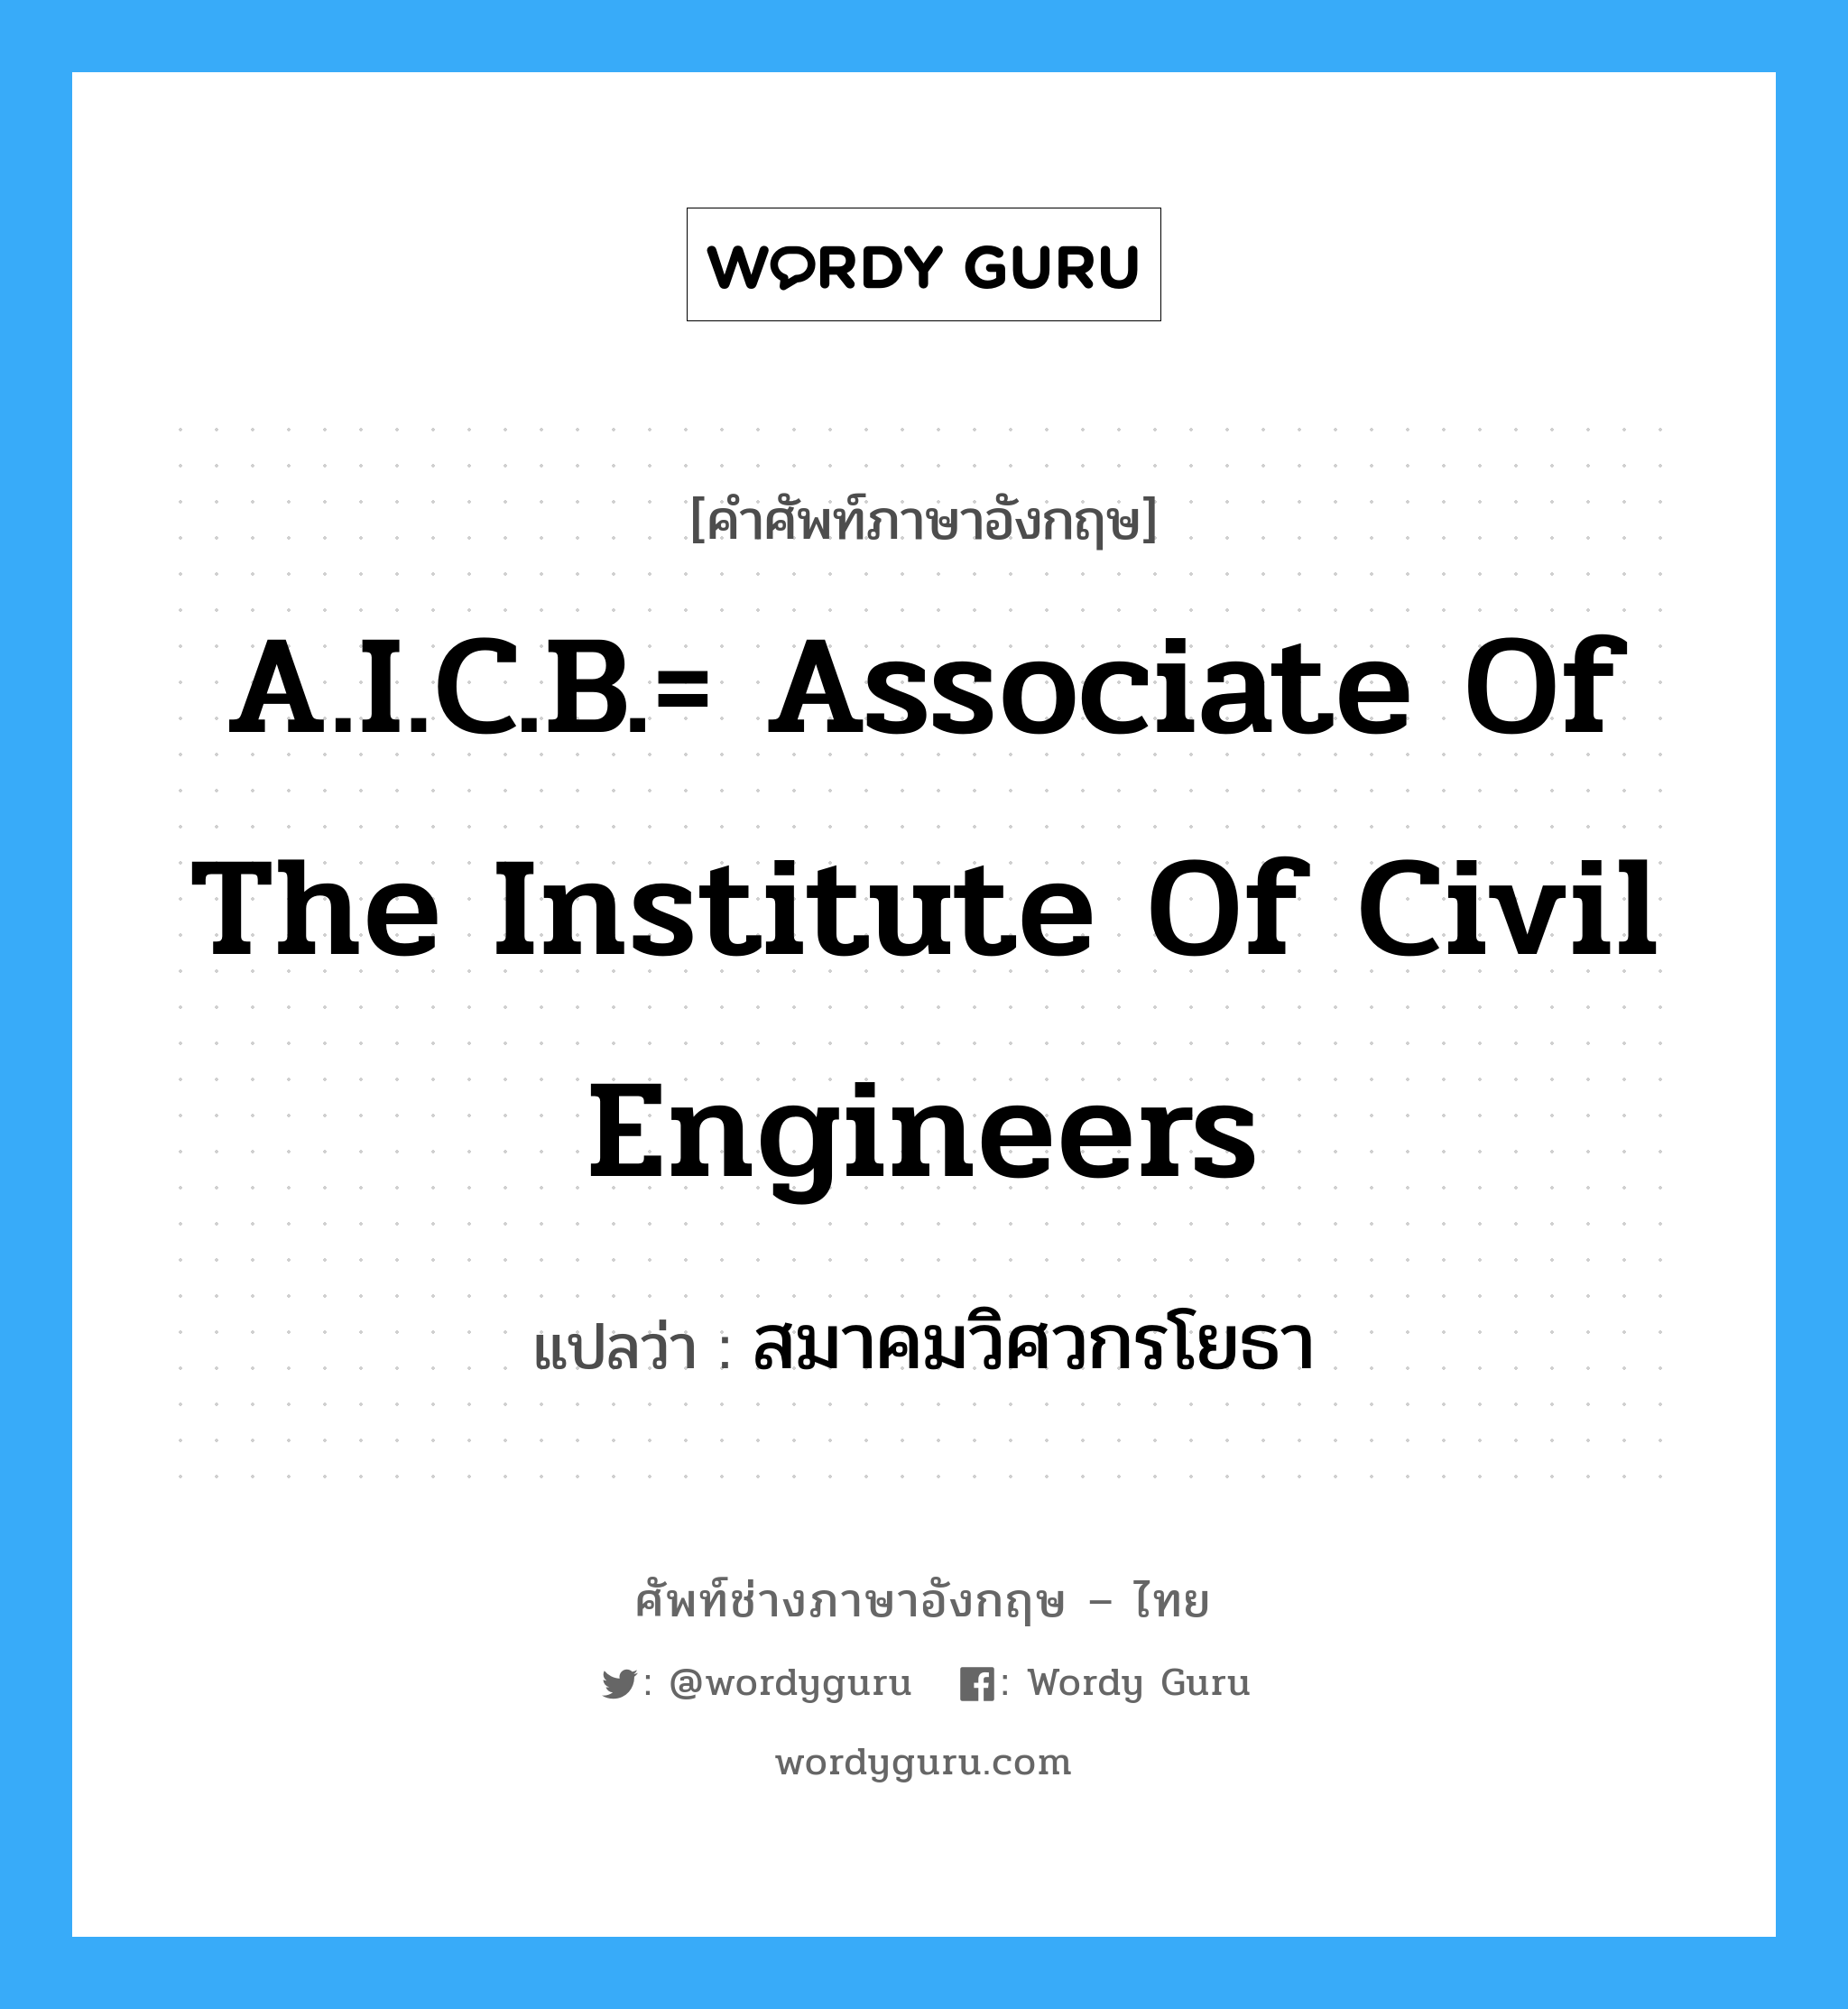 สมาคมวิศวกรโยธา ภาษาอังกฤษ?, คำศัพท์ช่างภาษาอังกฤษ - ไทย สมาคมวิศวกรโยธา คำศัพท์ภาษาอังกฤษ สมาคมวิศวกรโยธา แปลว่า A.I.C.B.= Associate of the Institute of Civil Engineers